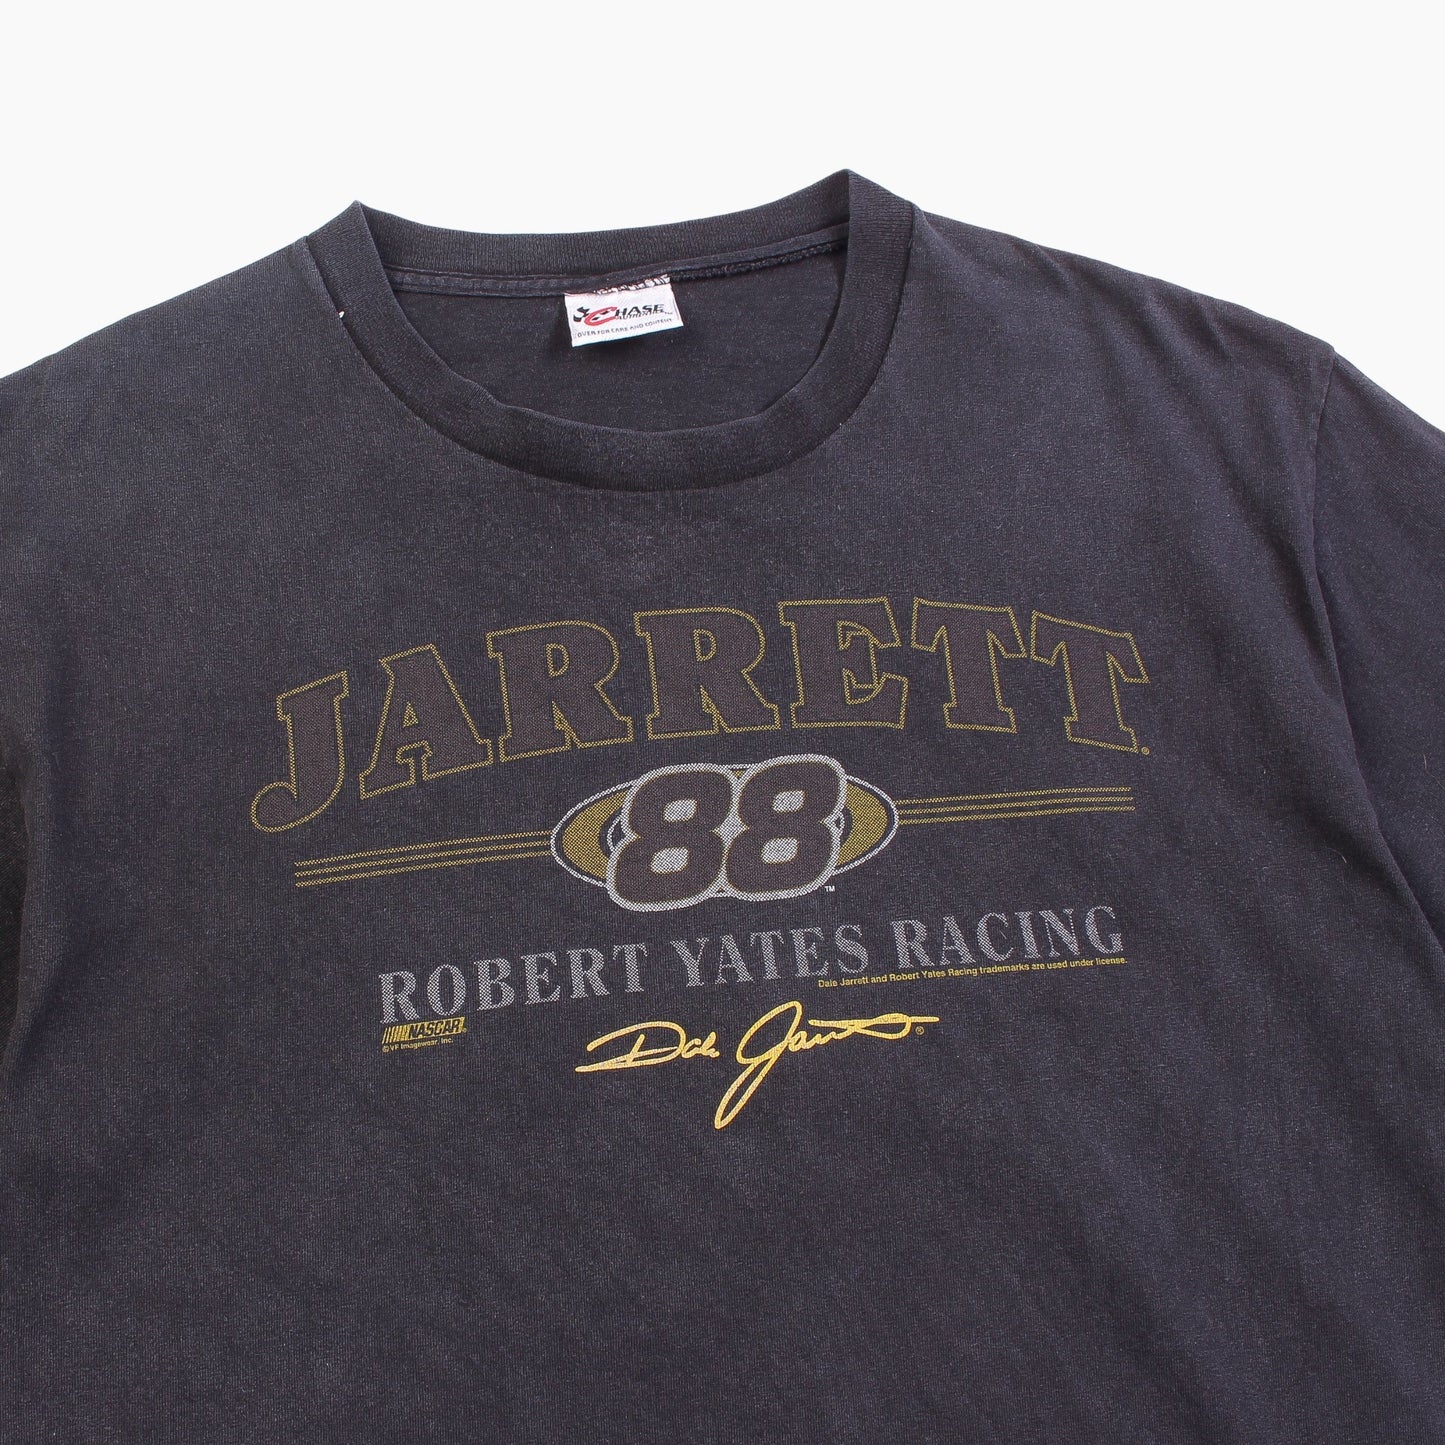 Vintage 'Jarrett' T-Shirt - American Madness